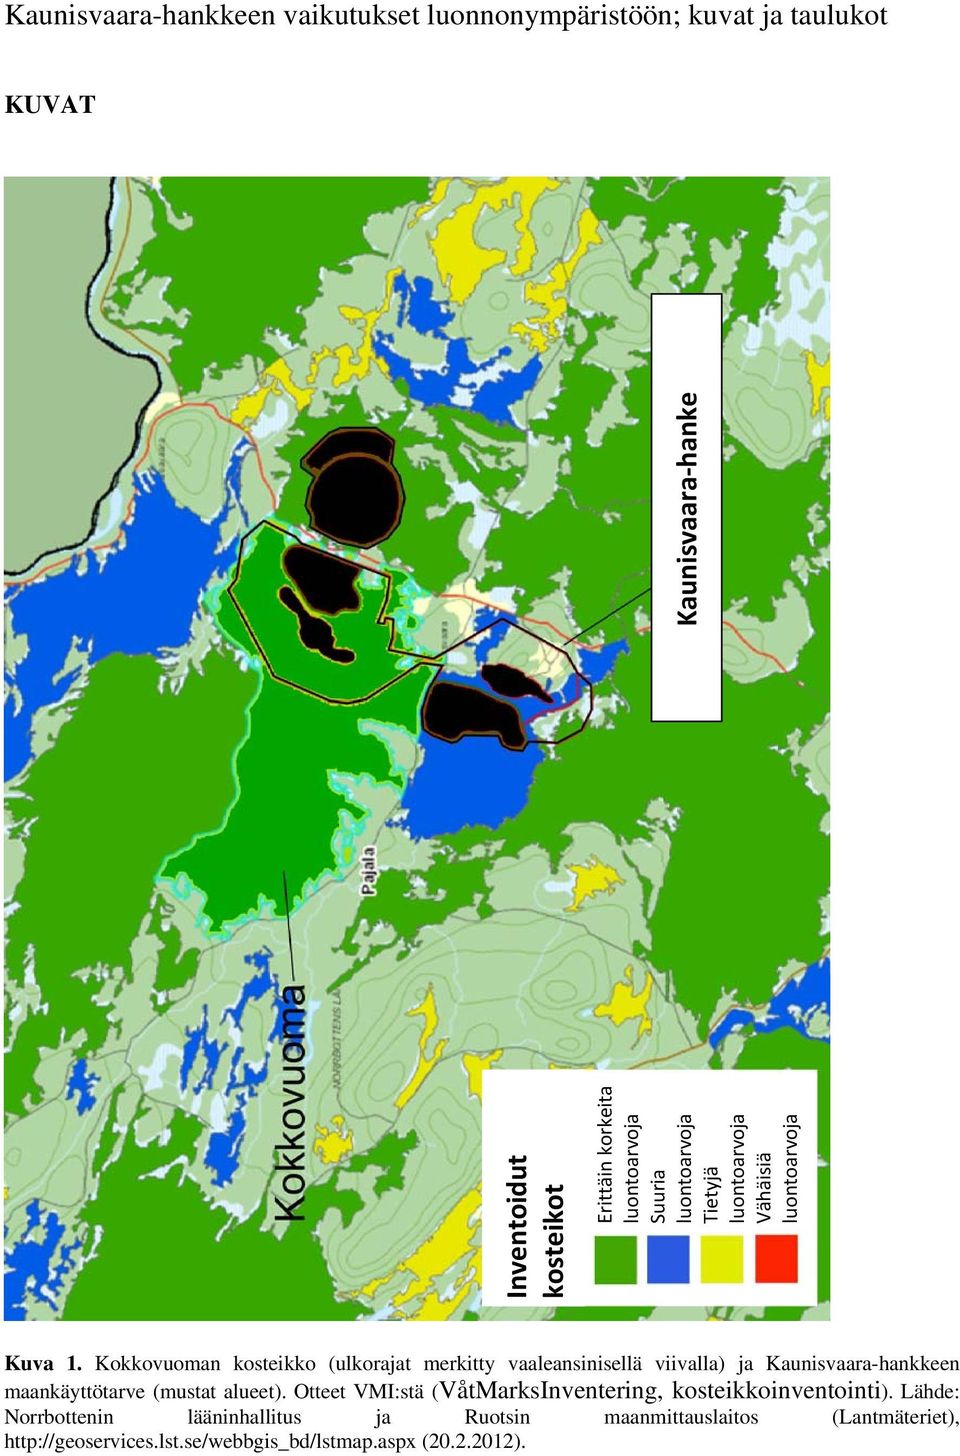 Kokkovuoman kosteikko (ulkorajat merkitty vaaleansinisellä viivalla) ja Kaunisvaara-hankkeen maankäyttötarve (mustat alueet).